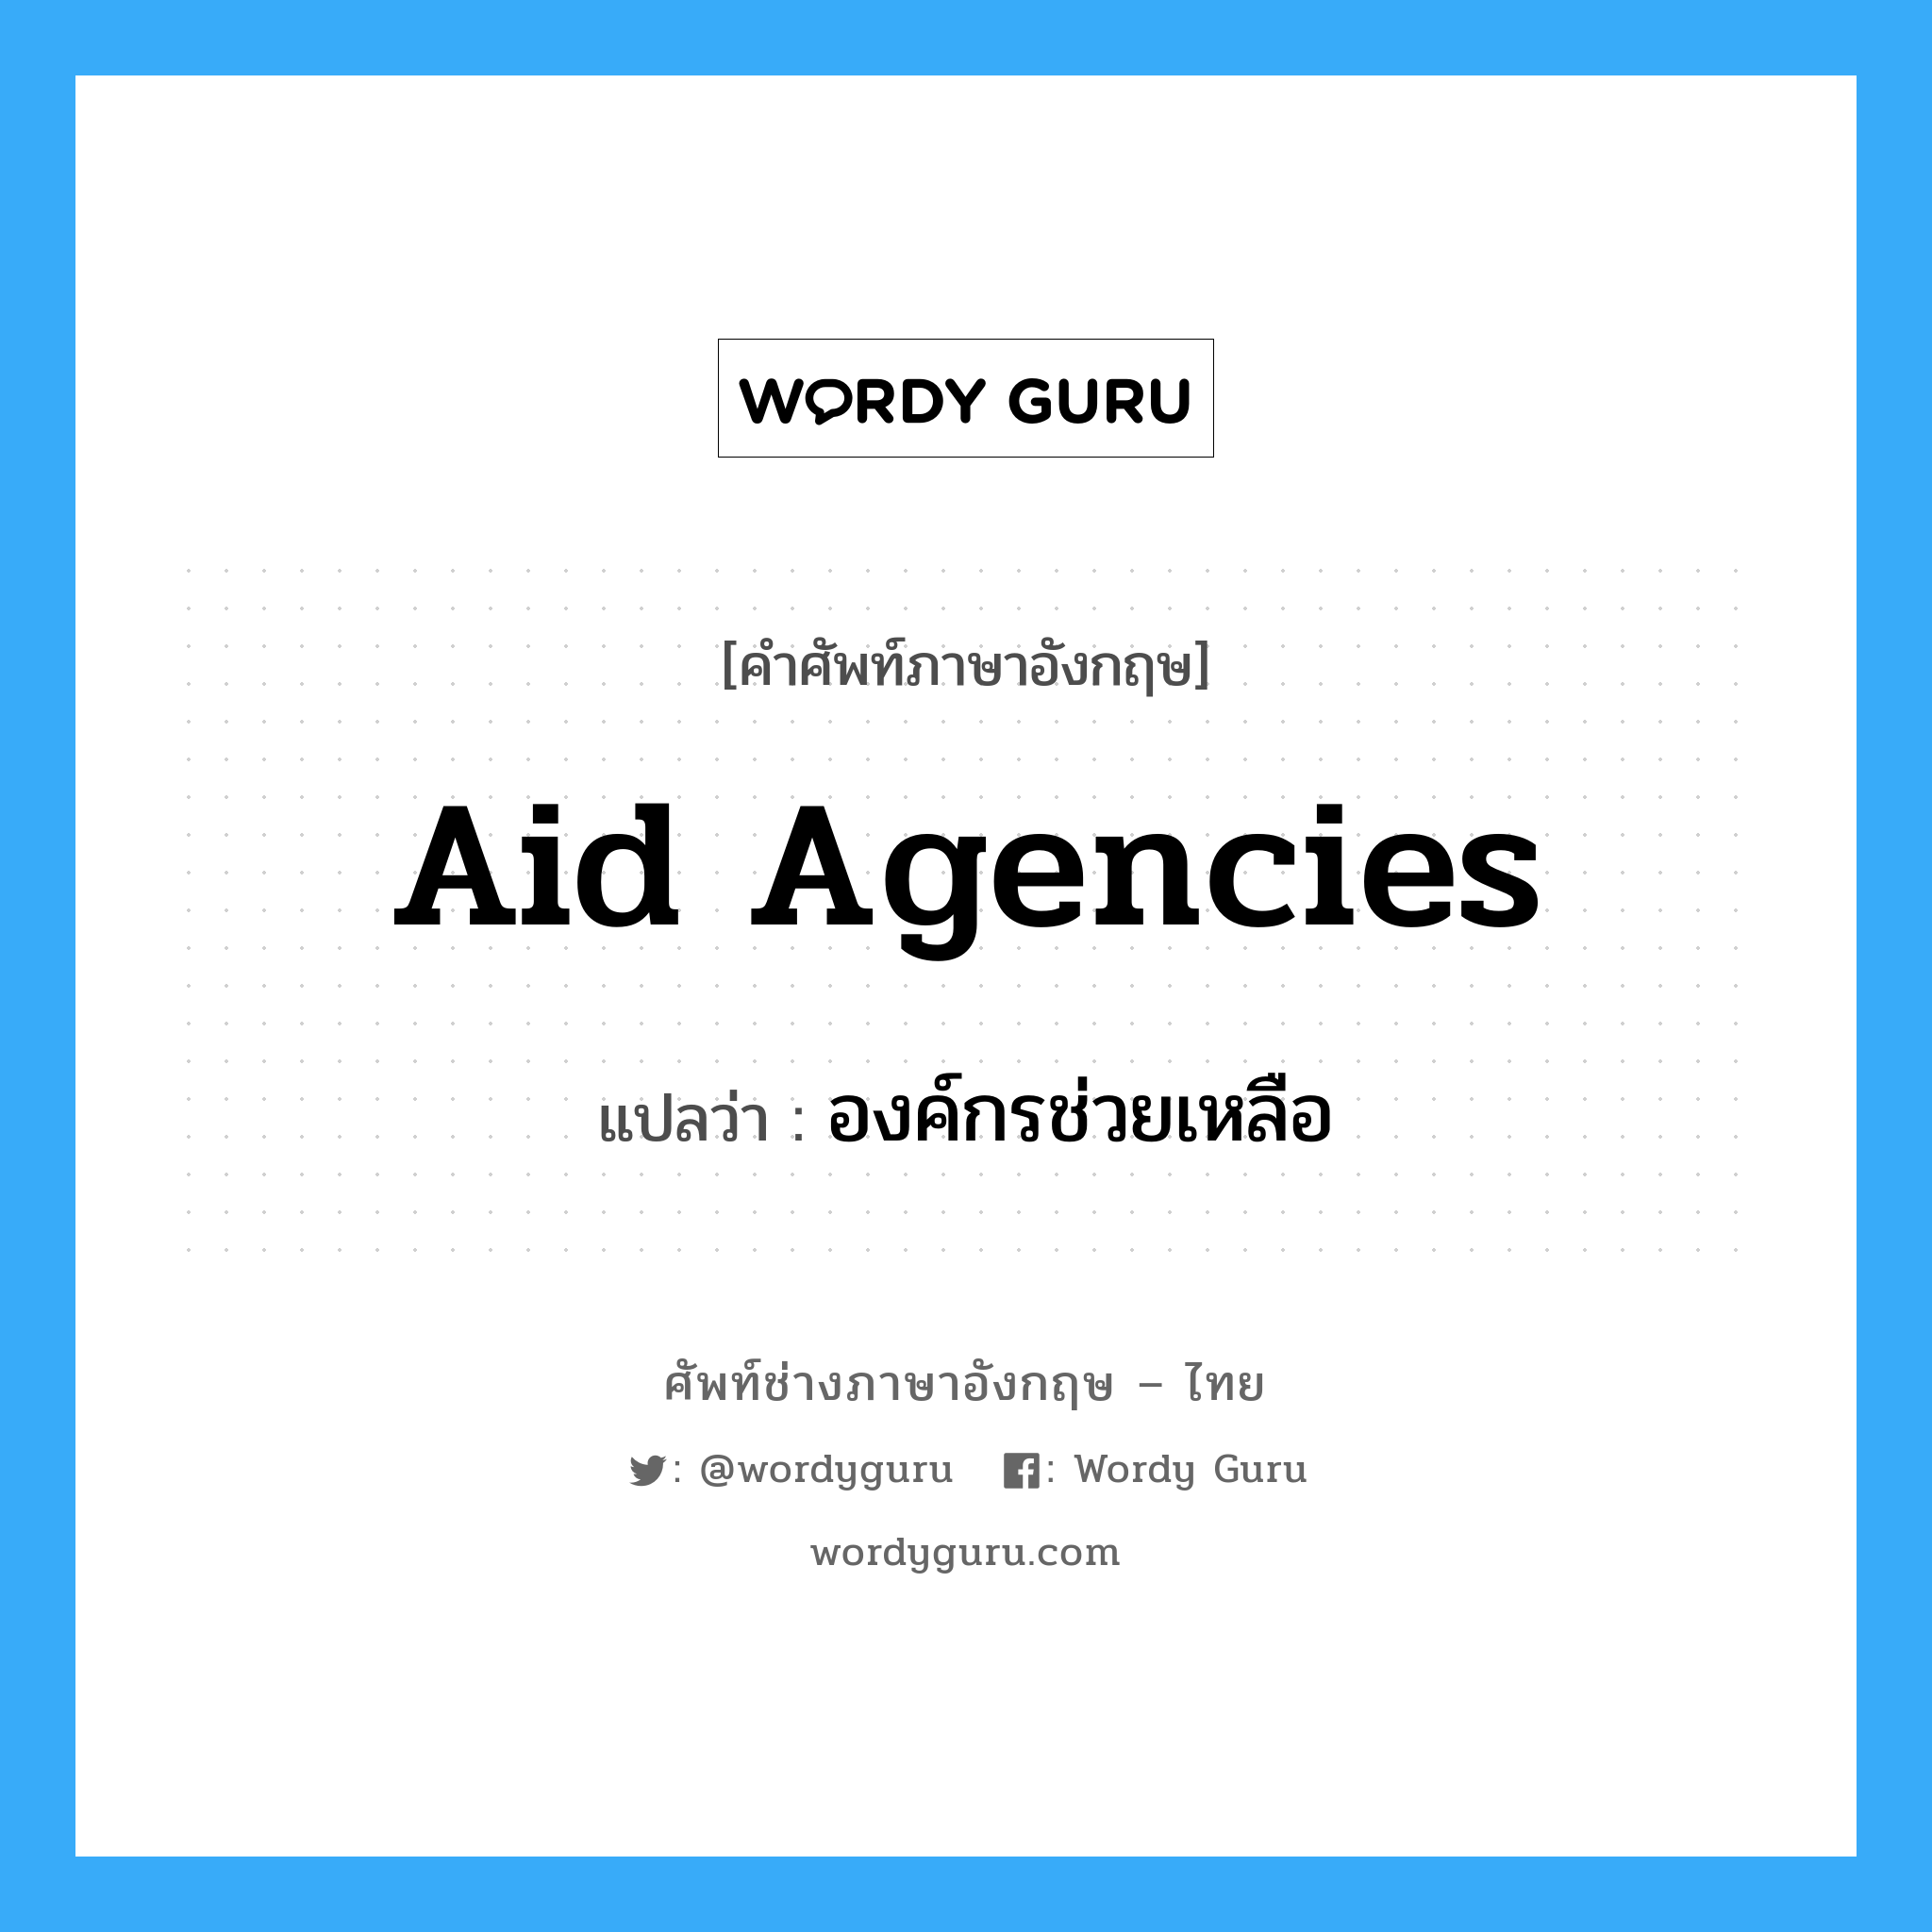 องค์กรช่วยเหลือ ภาษาอังกฤษ?, คำศัพท์ช่างภาษาอังกฤษ - ไทย องค์กรช่วยเหลือ คำศัพท์ภาษาอังกฤษ องค์กรช่วยเหลือ แปลว่า Aid Agencies